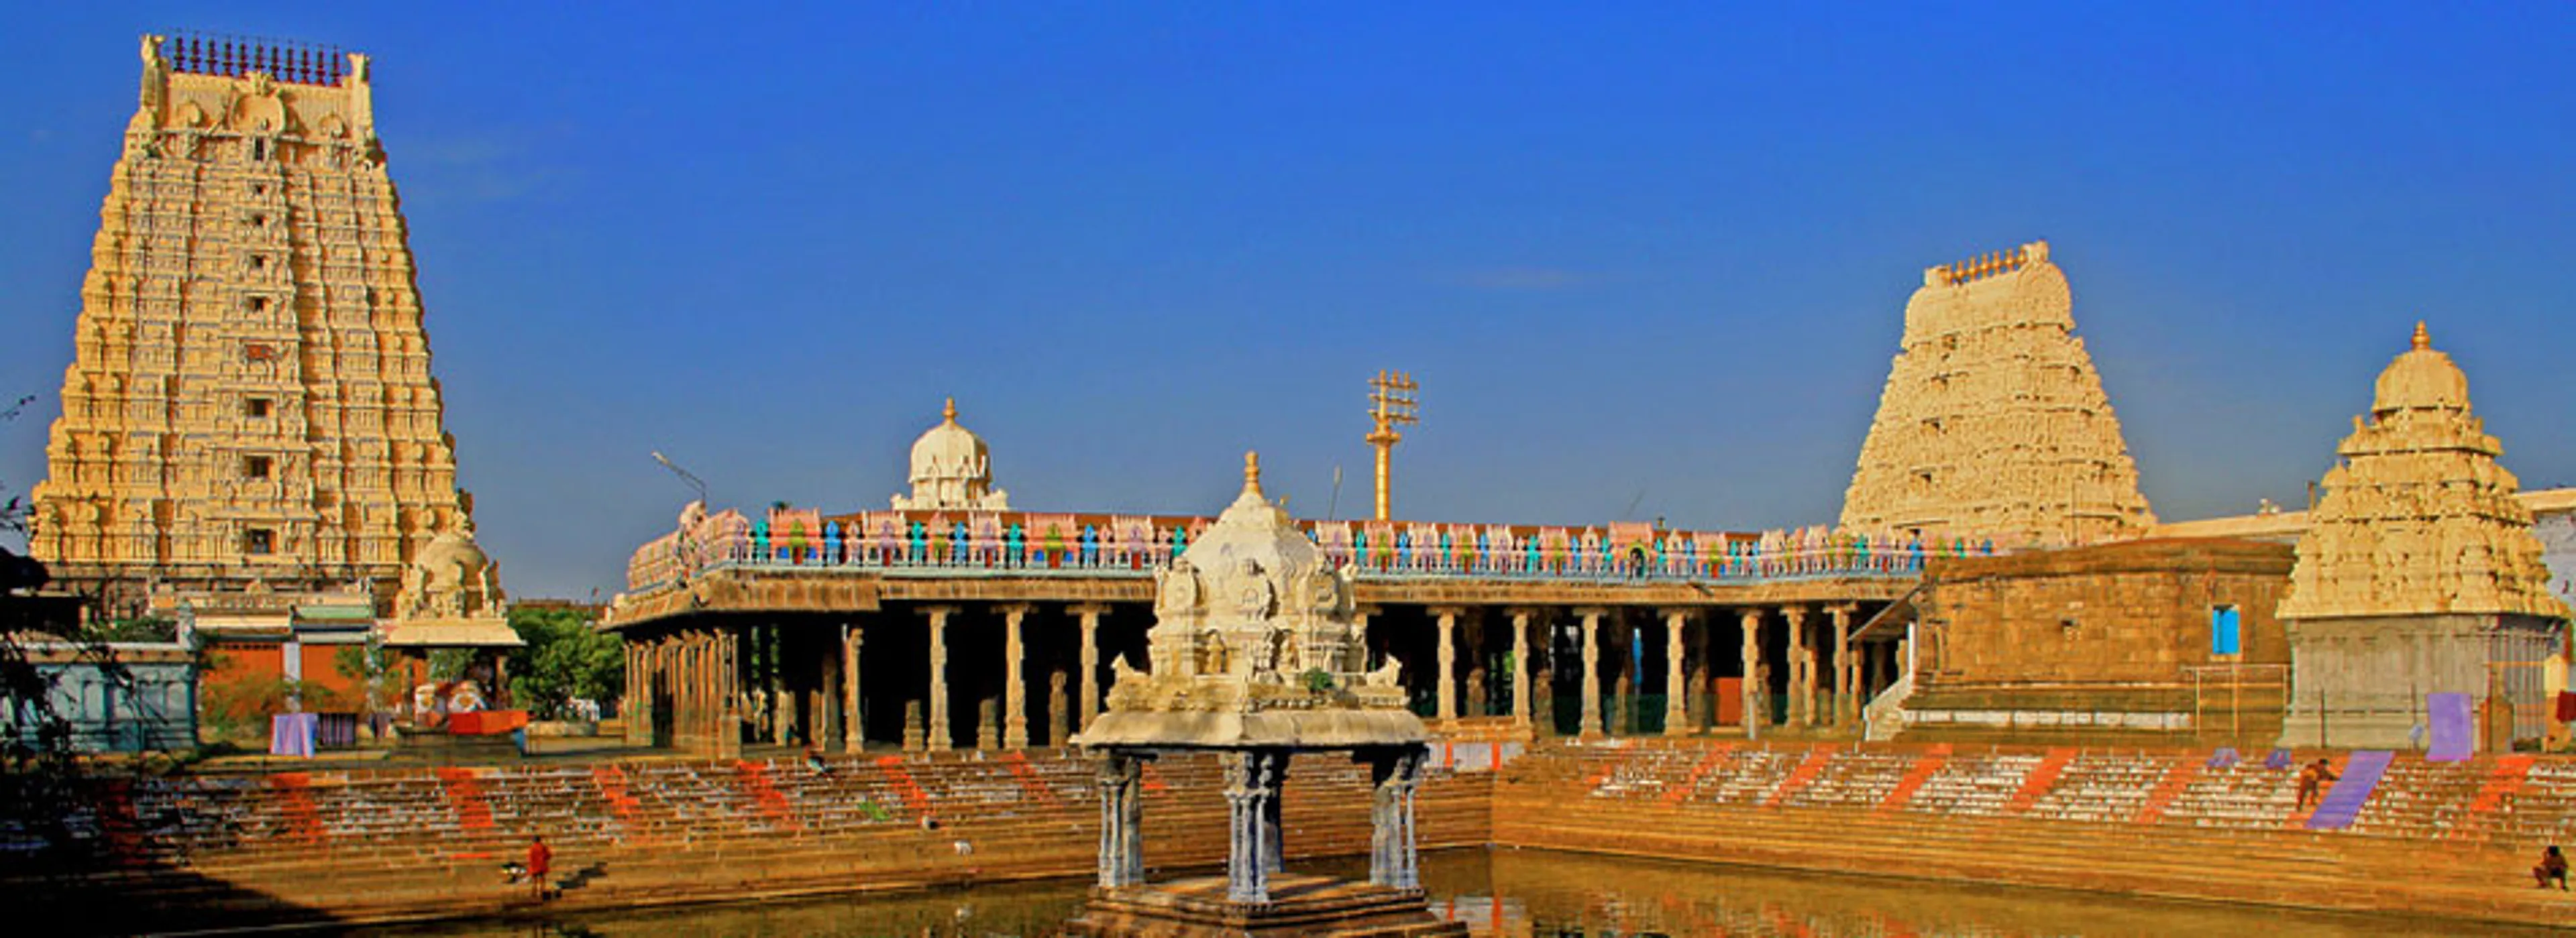 7 ngôi chùa đẹp nhất ở Chennai- Ấn Độ mà bạn không nên bỏ qua